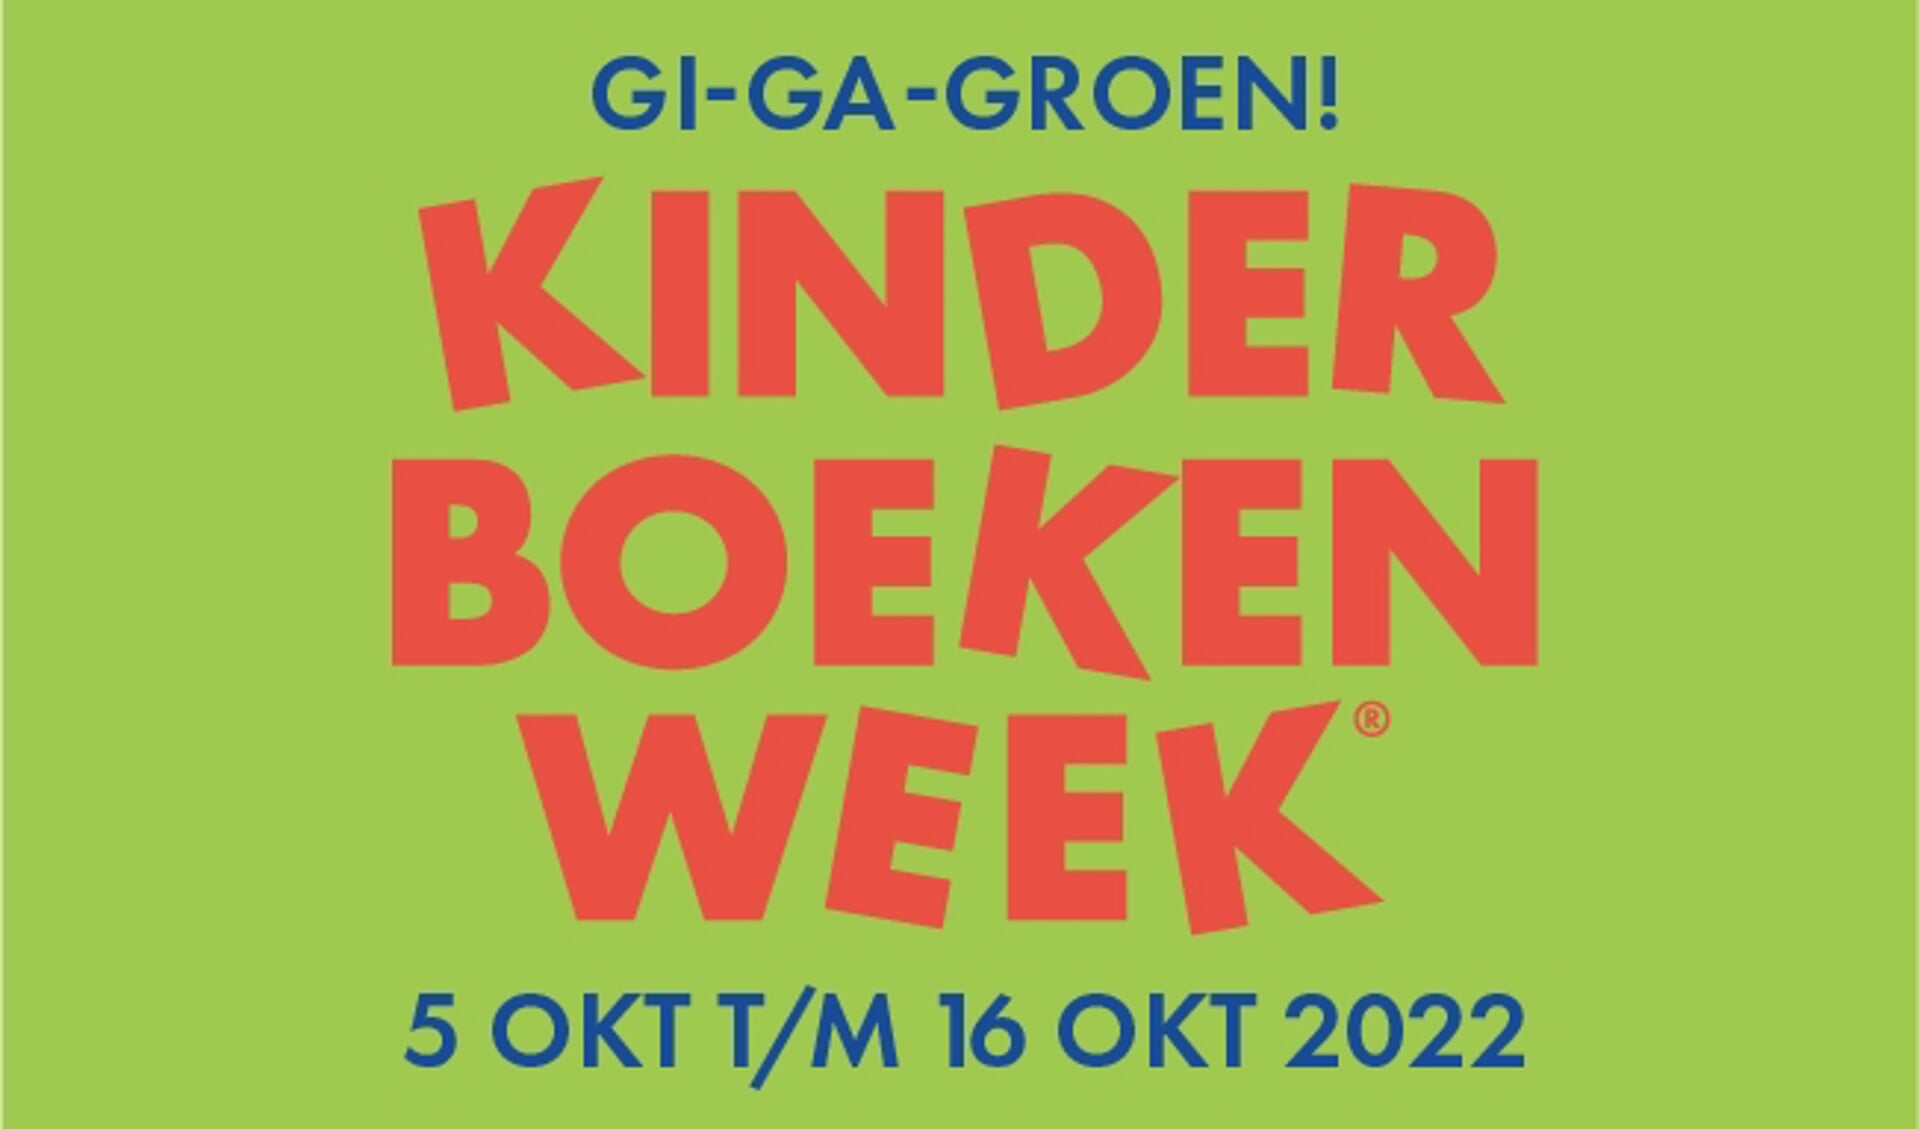 Gi-ga-groen Kinderboekenweek. 